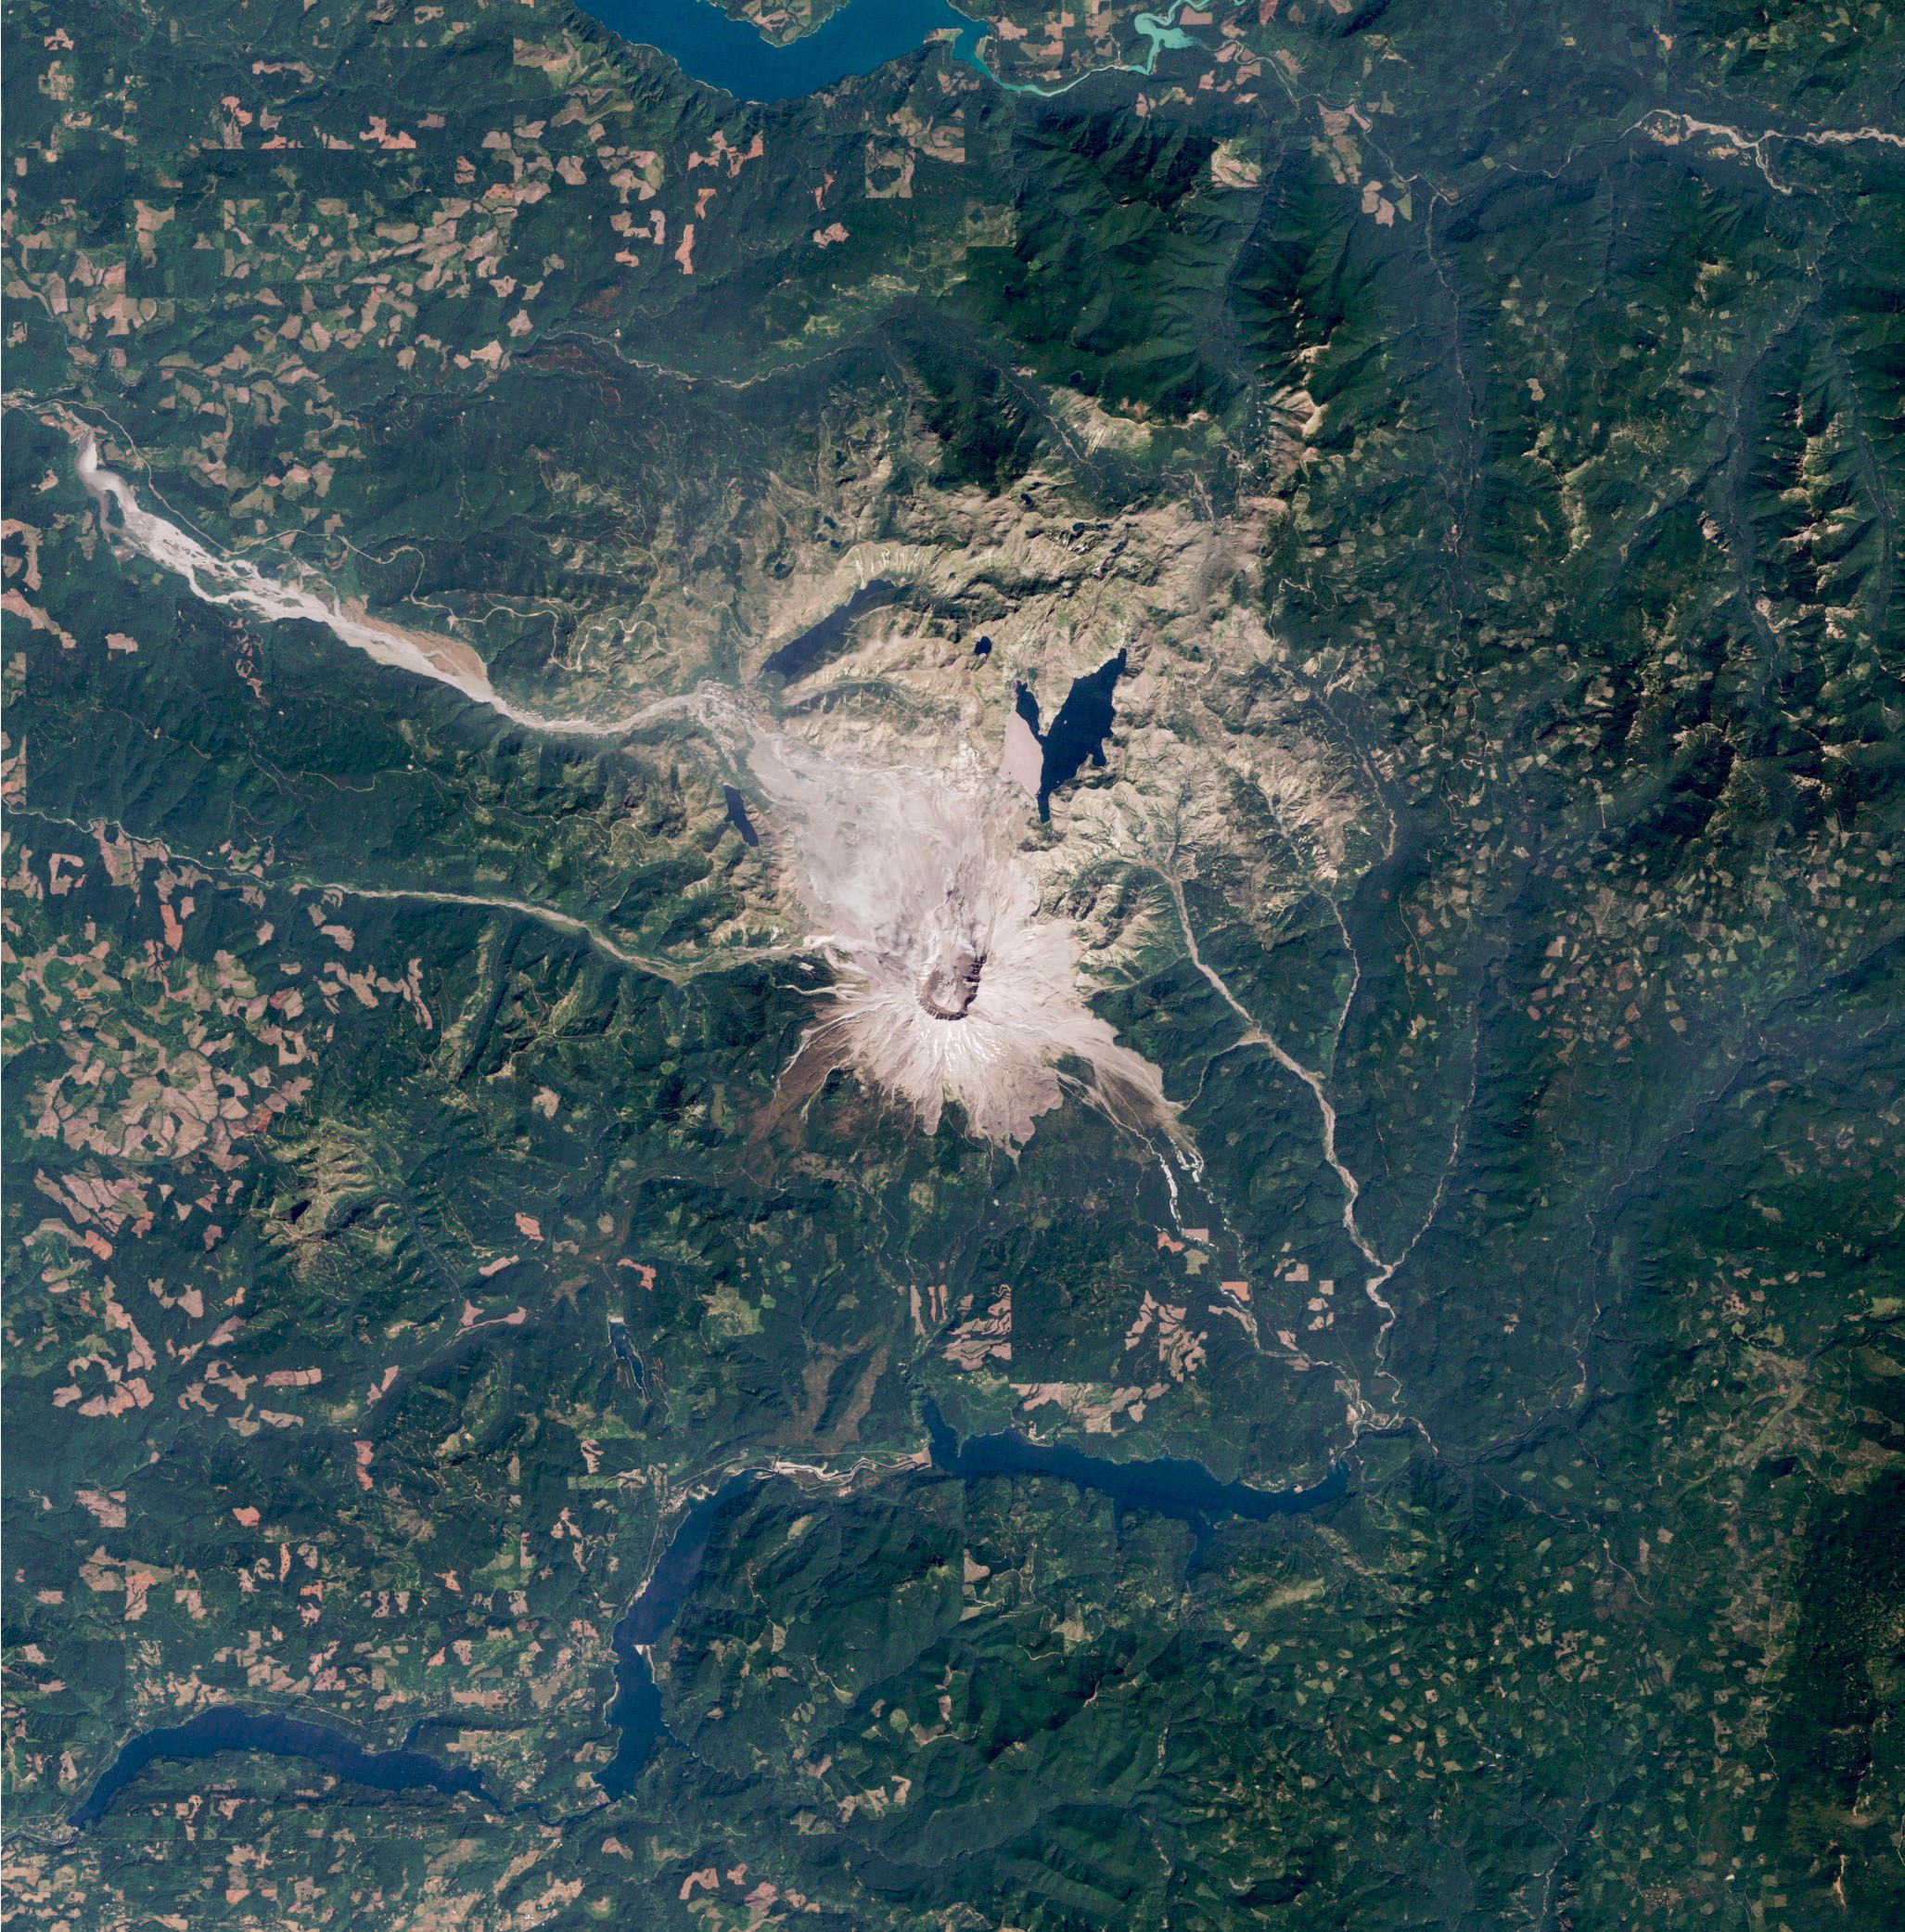 Der grau-braune Mount St. Helens ist mittig im Bild zu erkennen, sonst ist das Bild größtenteils grün.